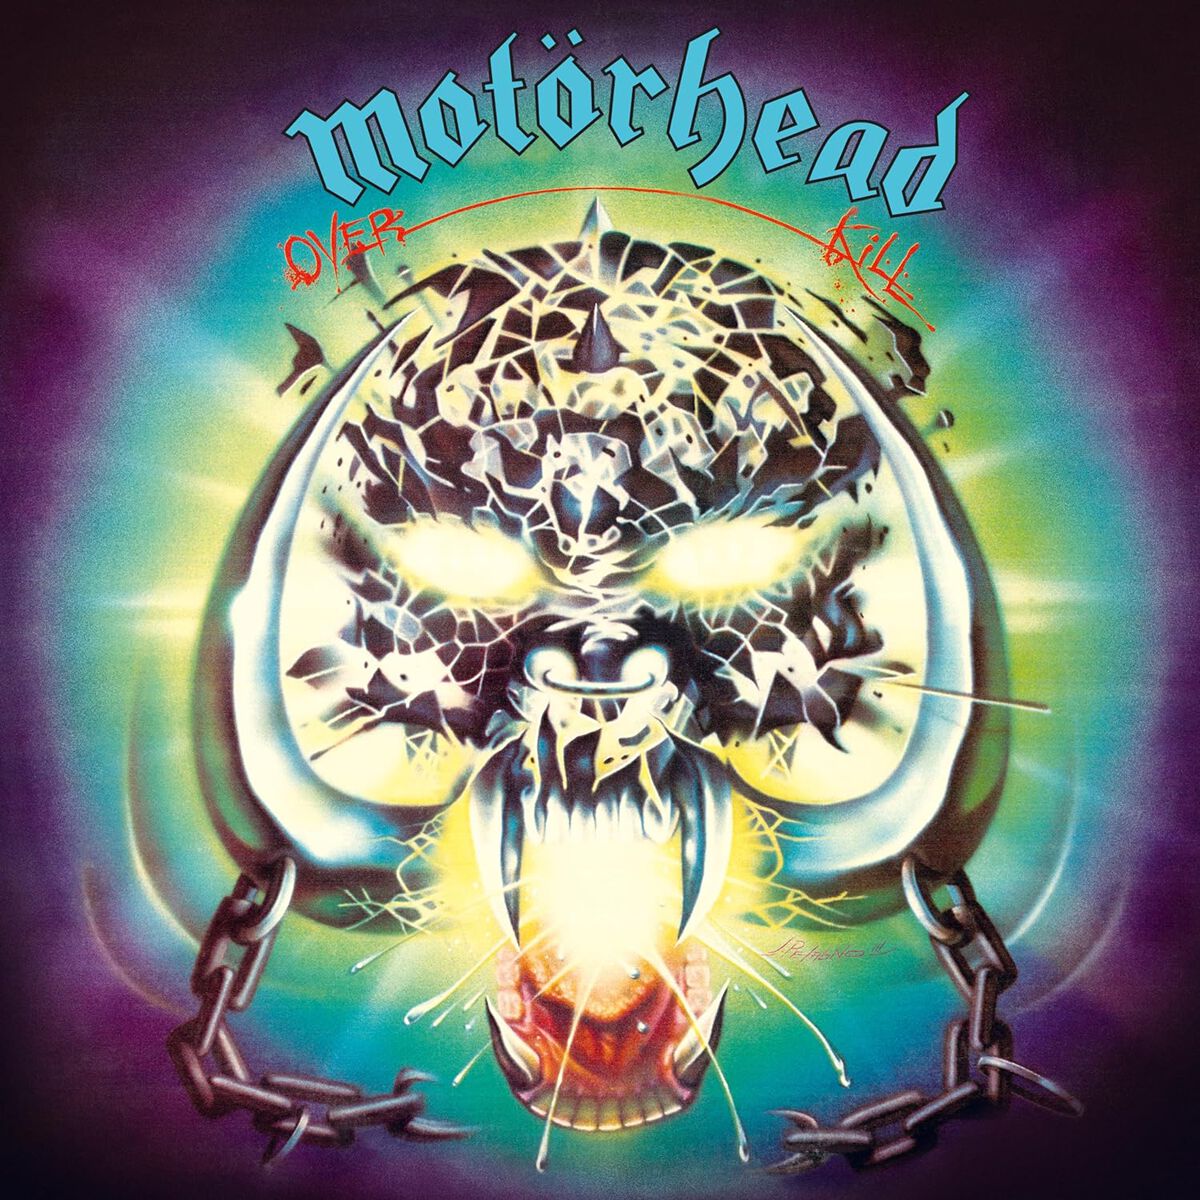 Motörhead Overkill (40th anniversary edition) CD multicolor